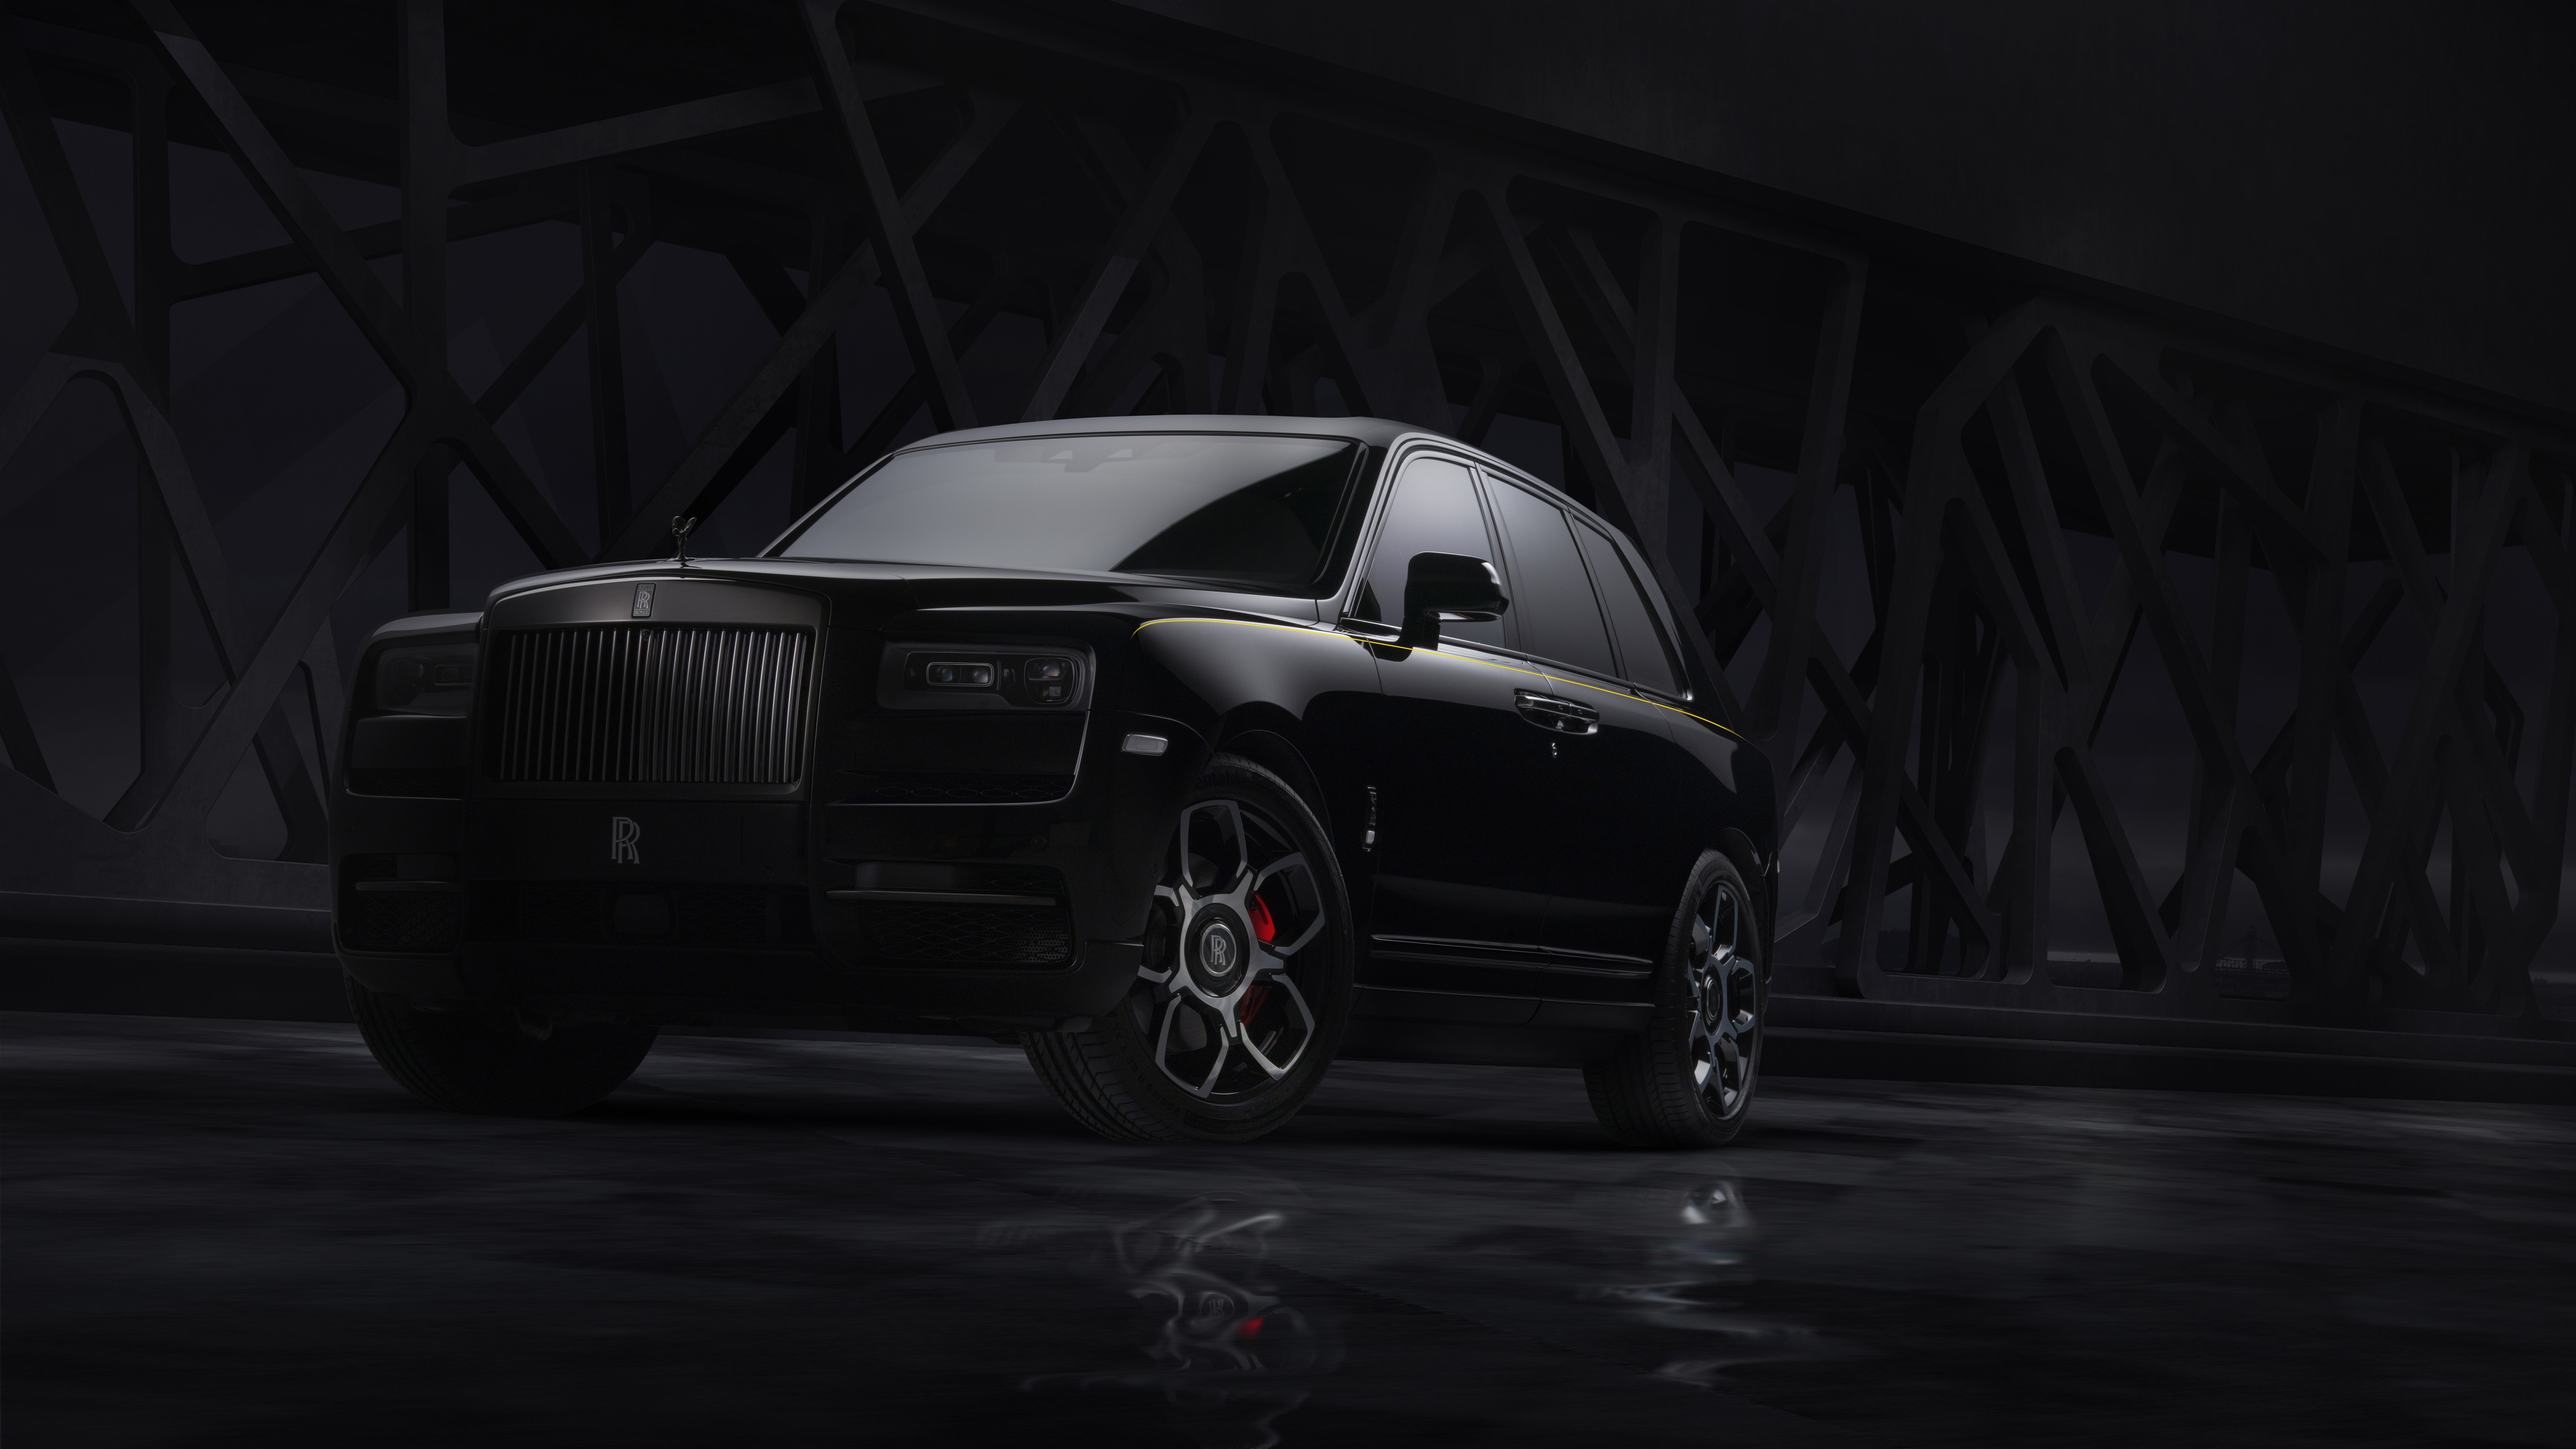 Rolls-Royce Cullinan Black Badge: Chiêm ngưỡng vẻ đẹp tinh tế của chiếc xe hơi đen Rolls-Royce Cullinan Black Badge. Với ngoại thất đen bóng và nội thất sang trọng, chiếc xe này sẽ chinh phục trái tim của những tín đồ mê xe hơi.